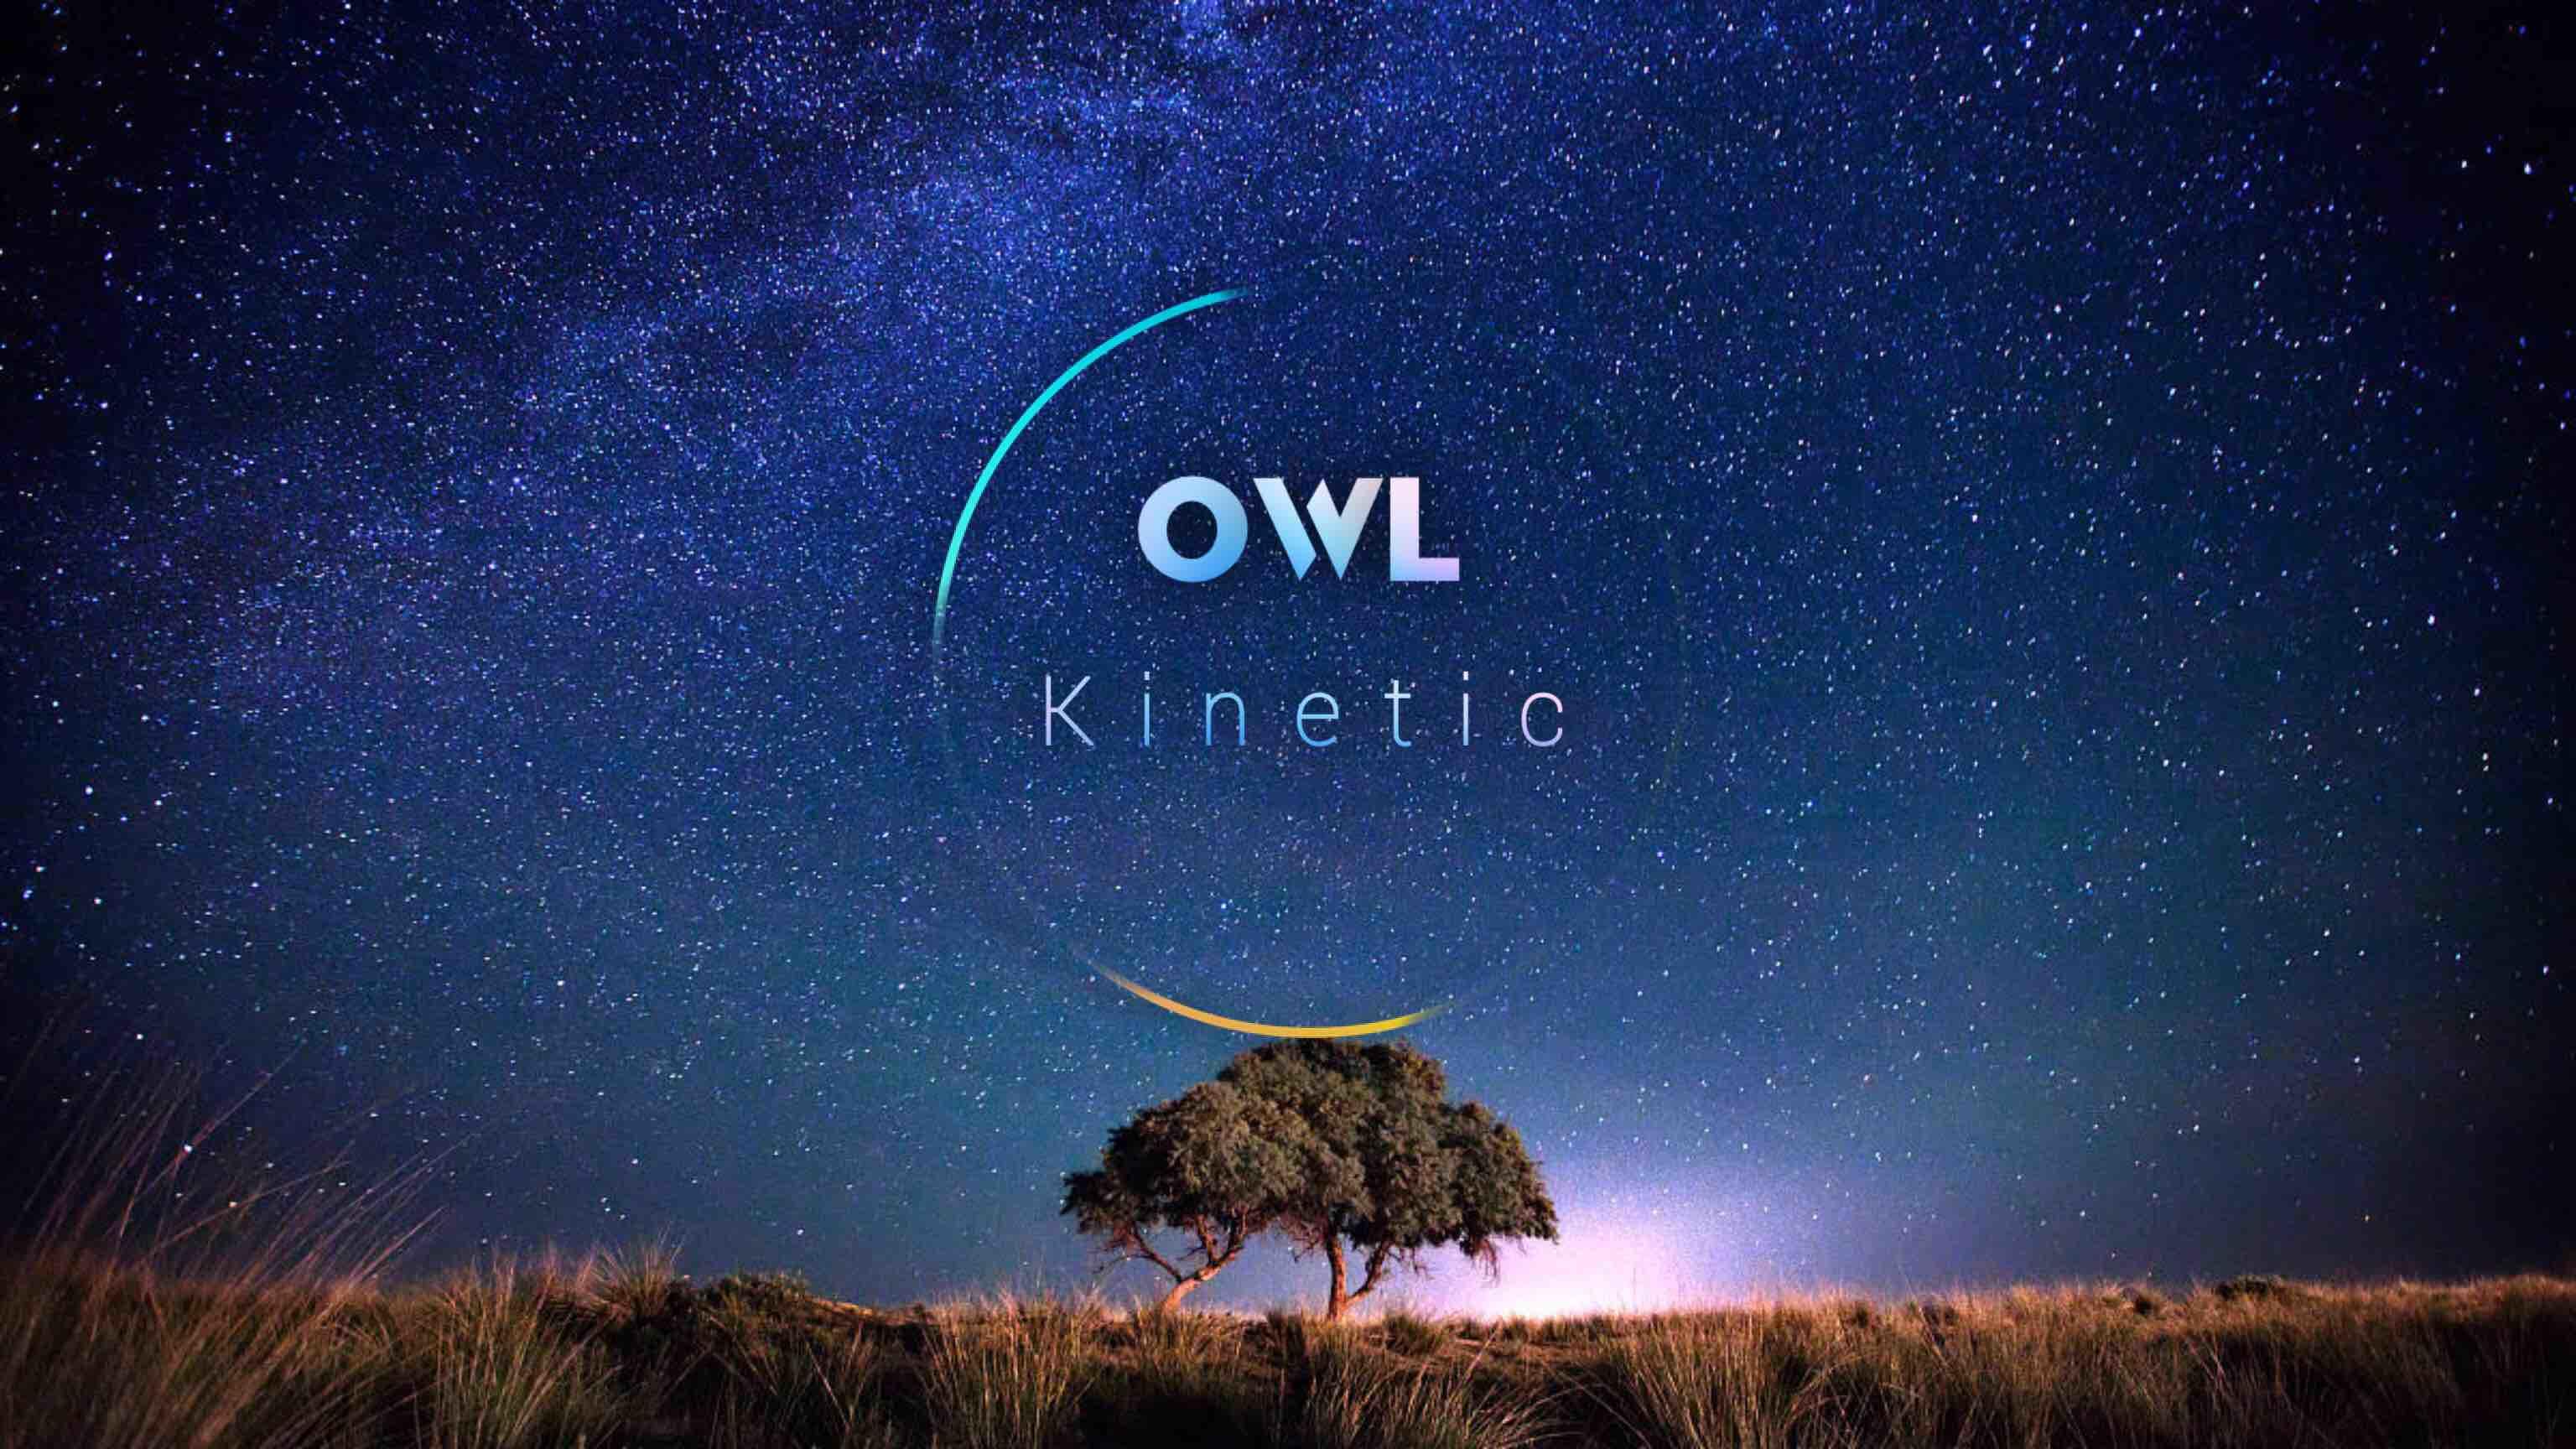 Owlkinetic